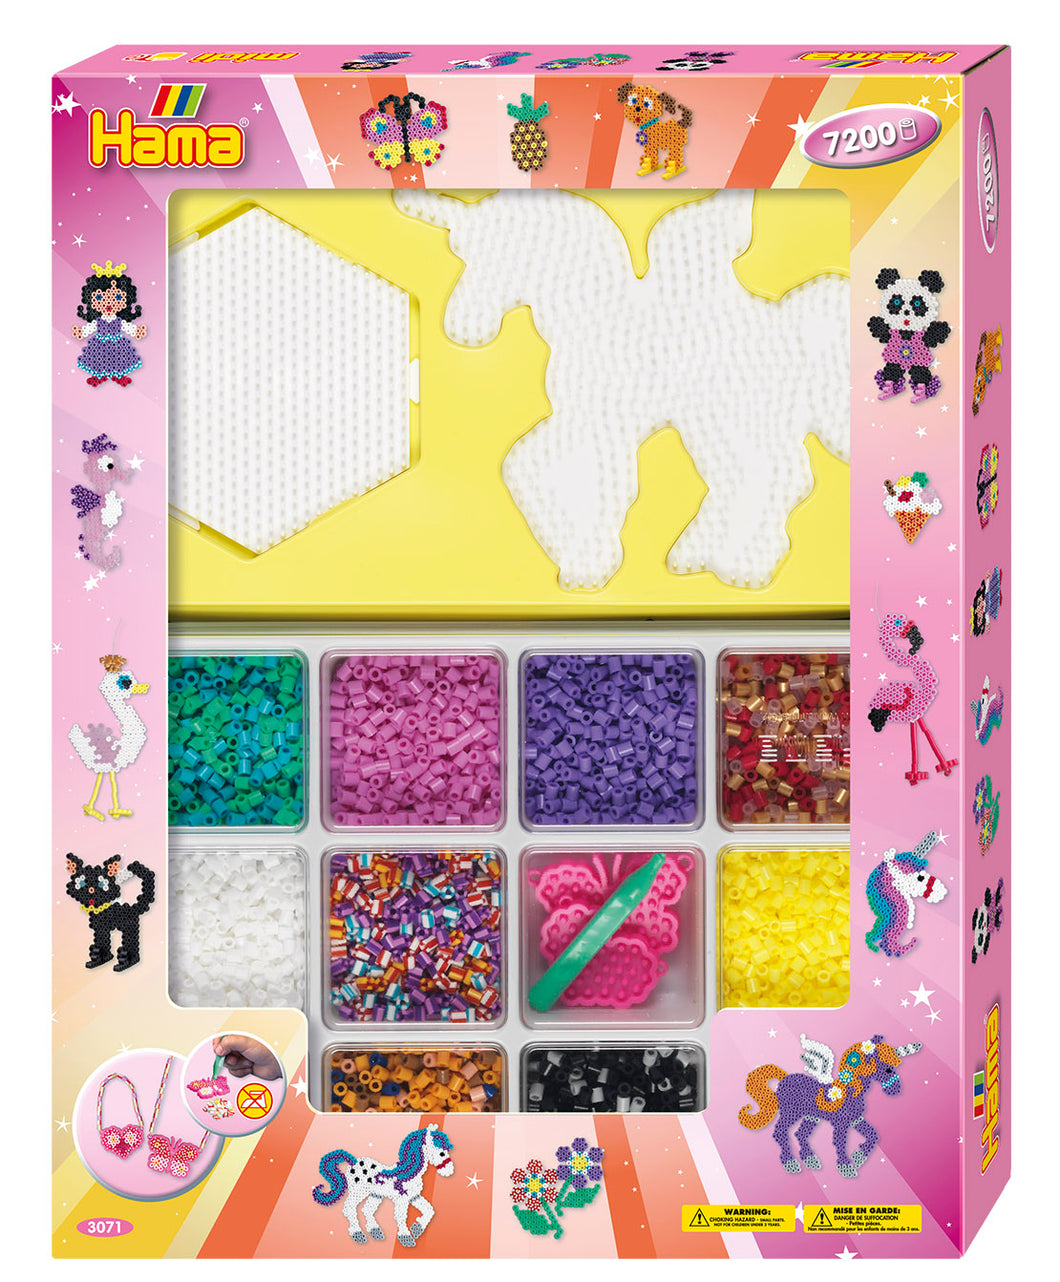 Giant Hama Beads Open Gift Box - Pink